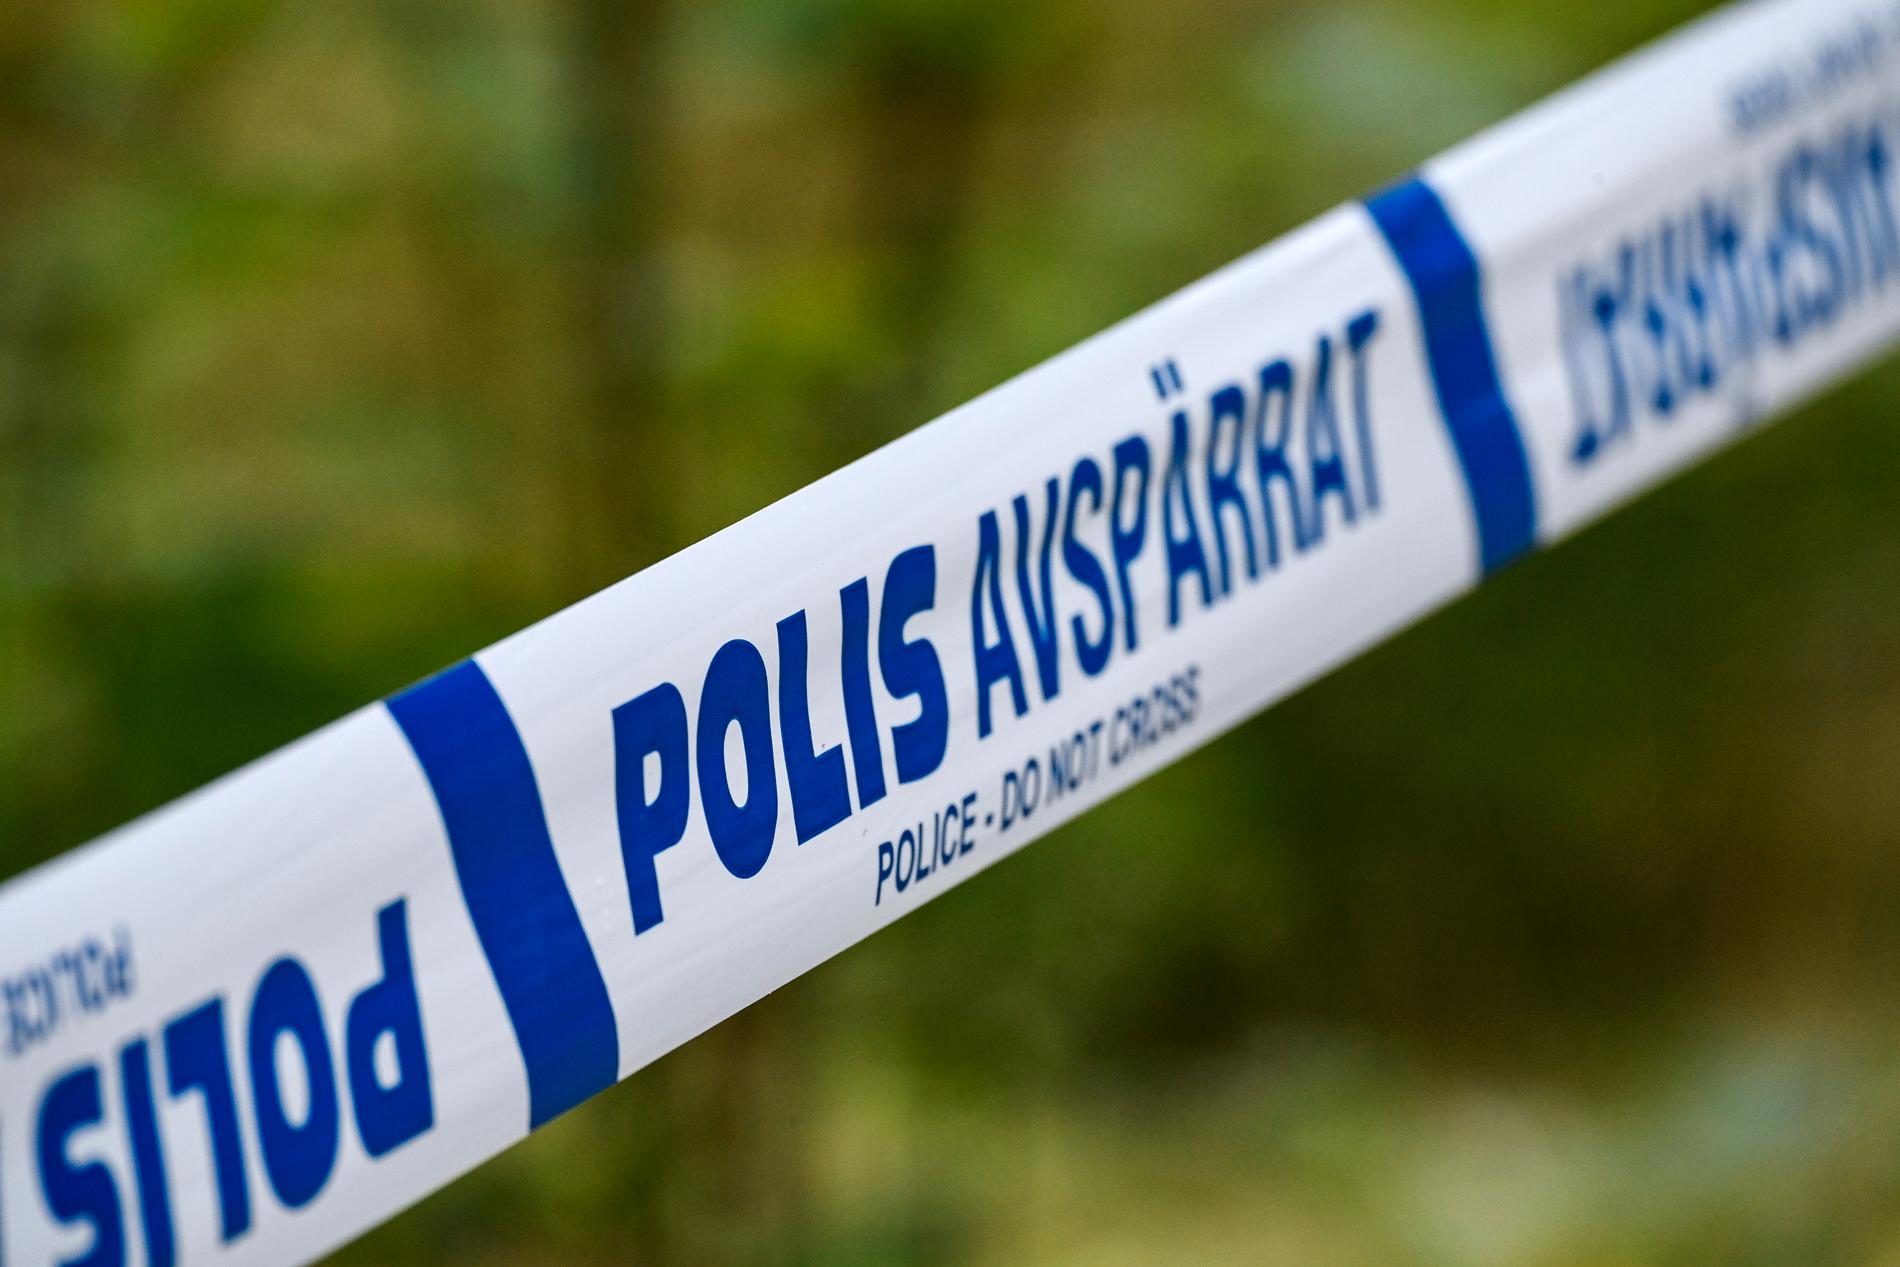 Kvinnan hittades svårt skadad vid en viadukt i Fagersta i slutet av juli och avled senare. Nu kommer domen mot den man som åtalats för mordet och samt grov våldtäkt. Arkivbild.